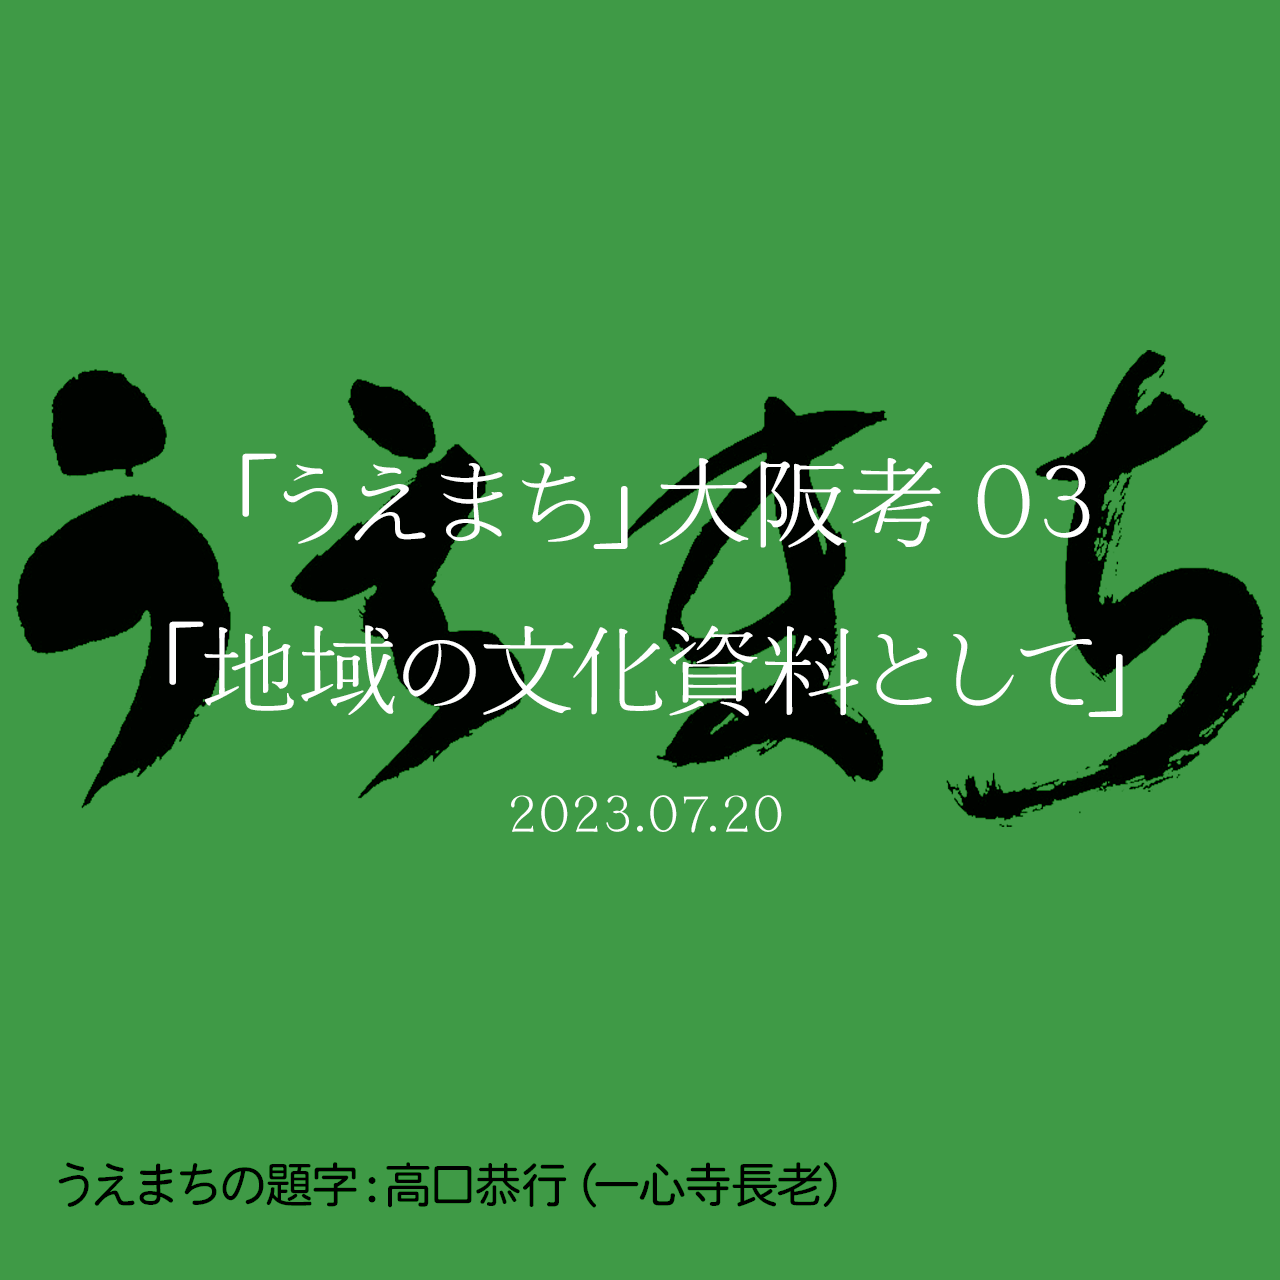 「うえまち」大阪考 03「地域の文化資料として」